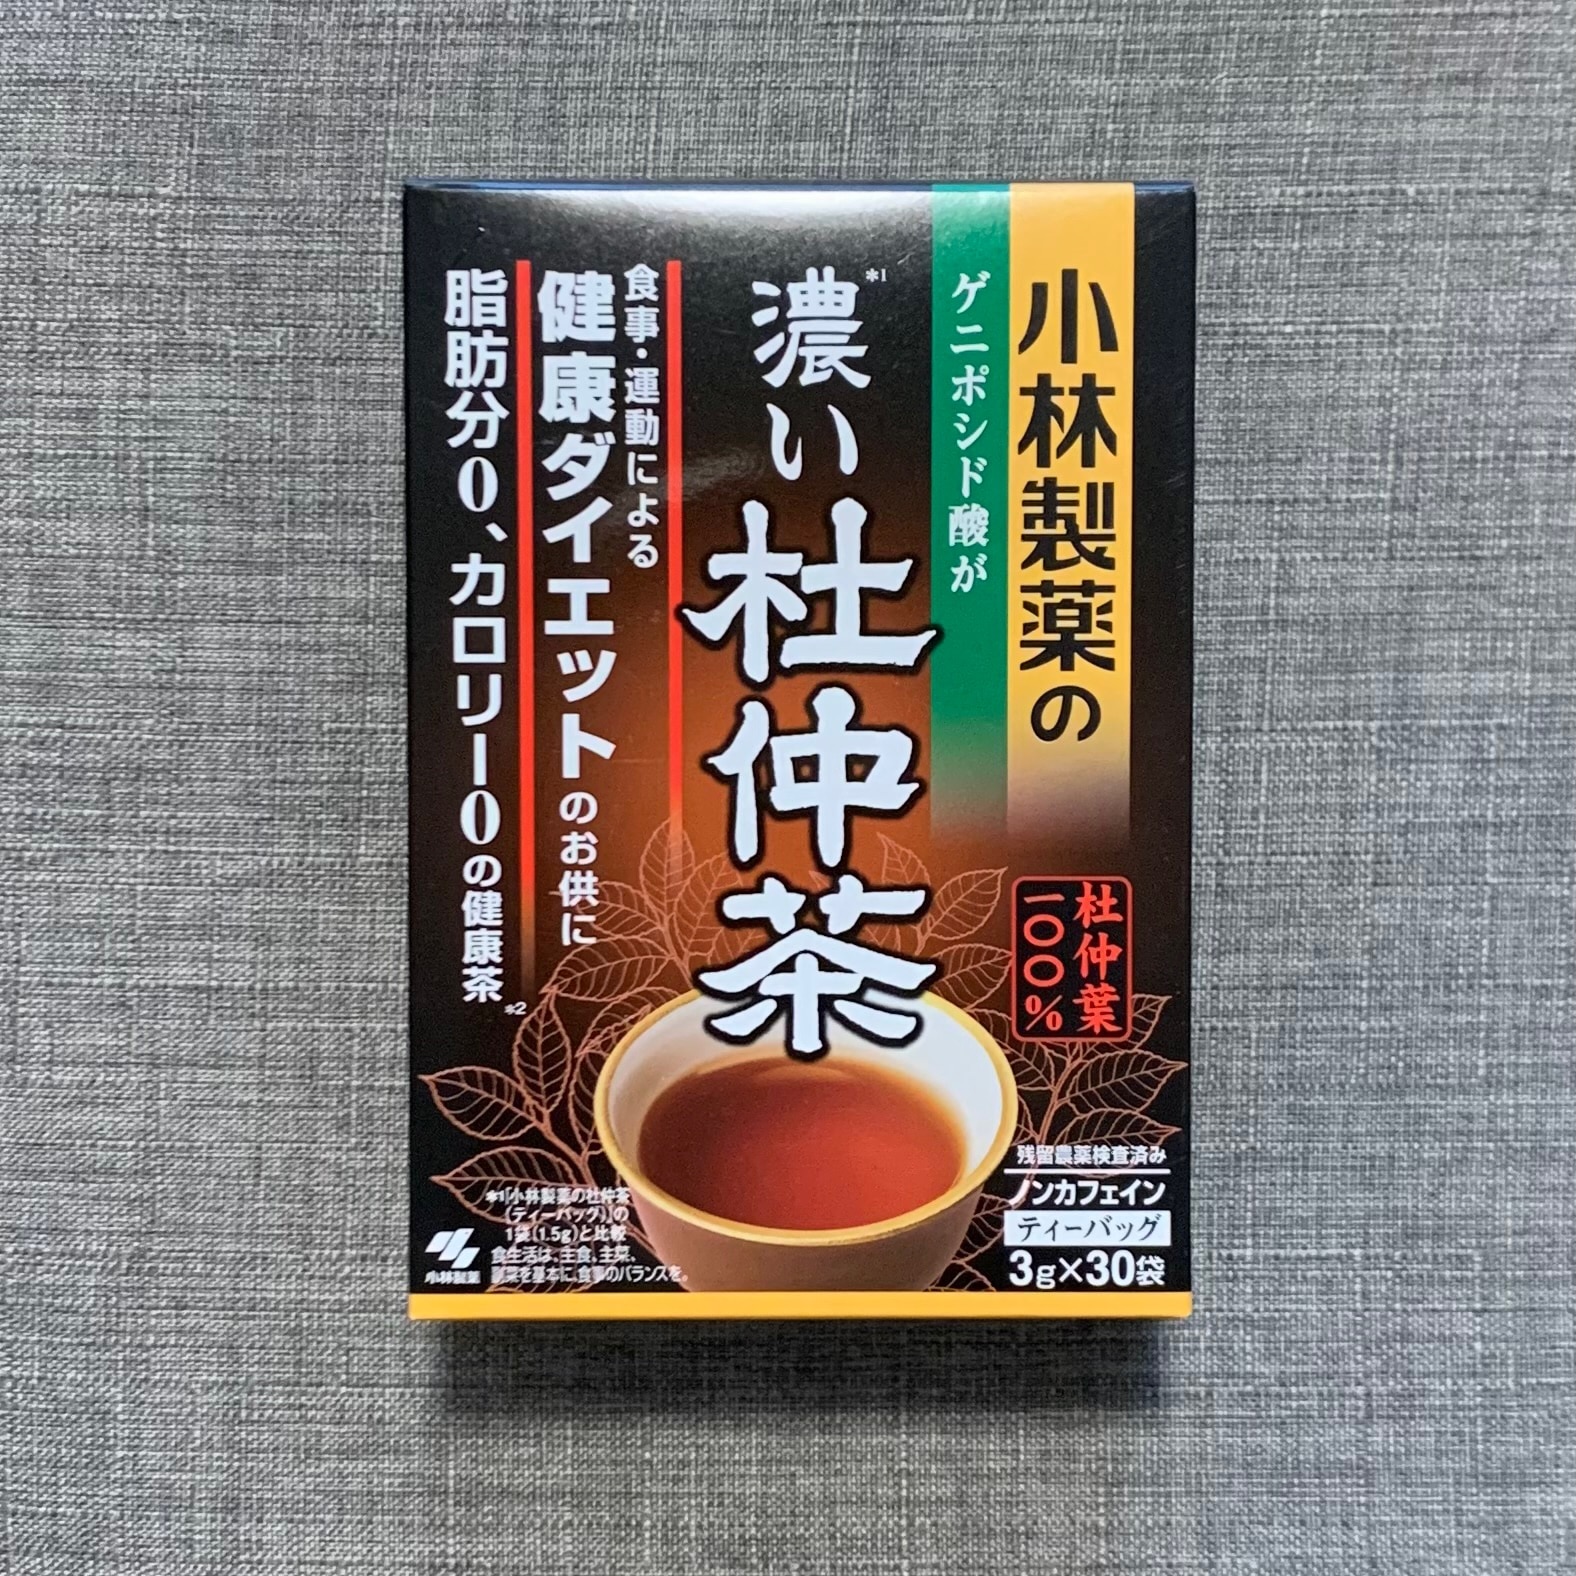 小林製薬の濃い杜仲茶(3g*30袋入*3コセット)【小林製薬の杜仲茶】[食事